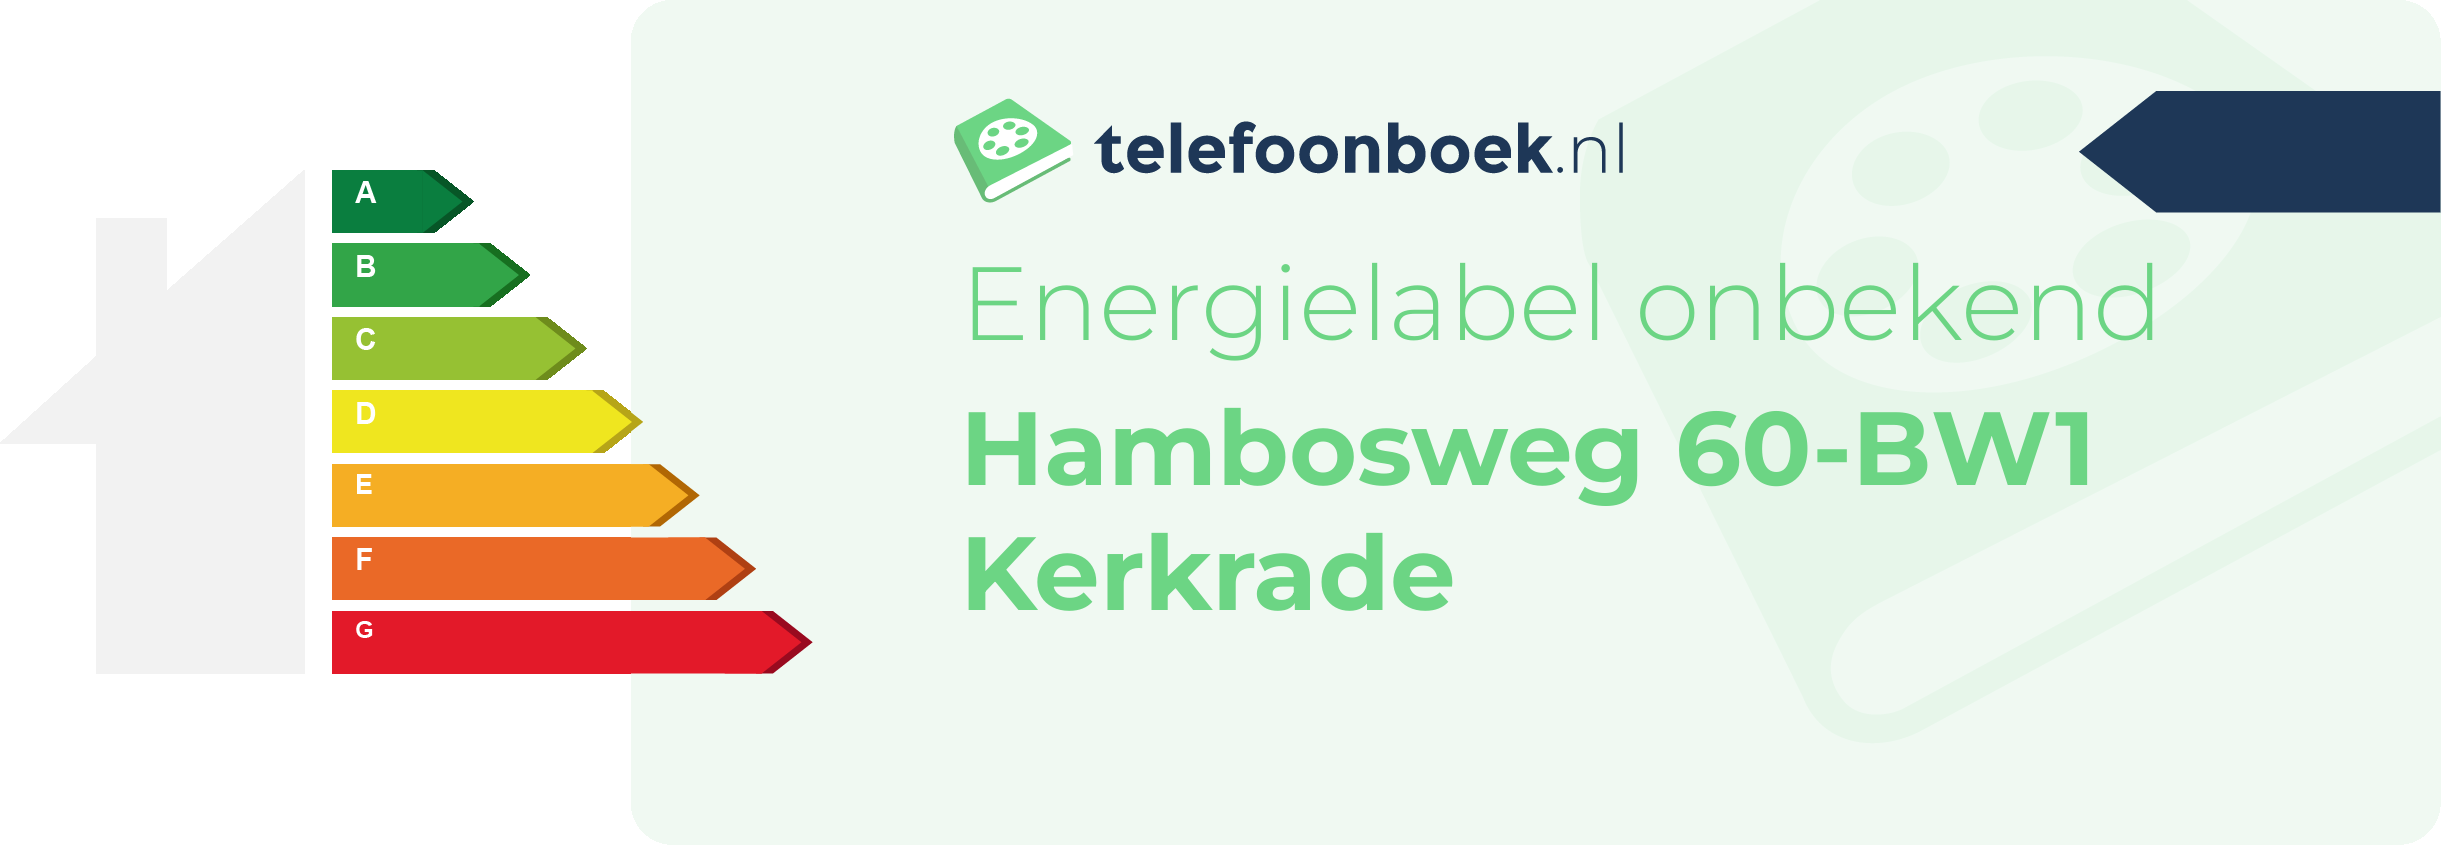 Energielabel Hambosweg 60-BW1 Kerkrade